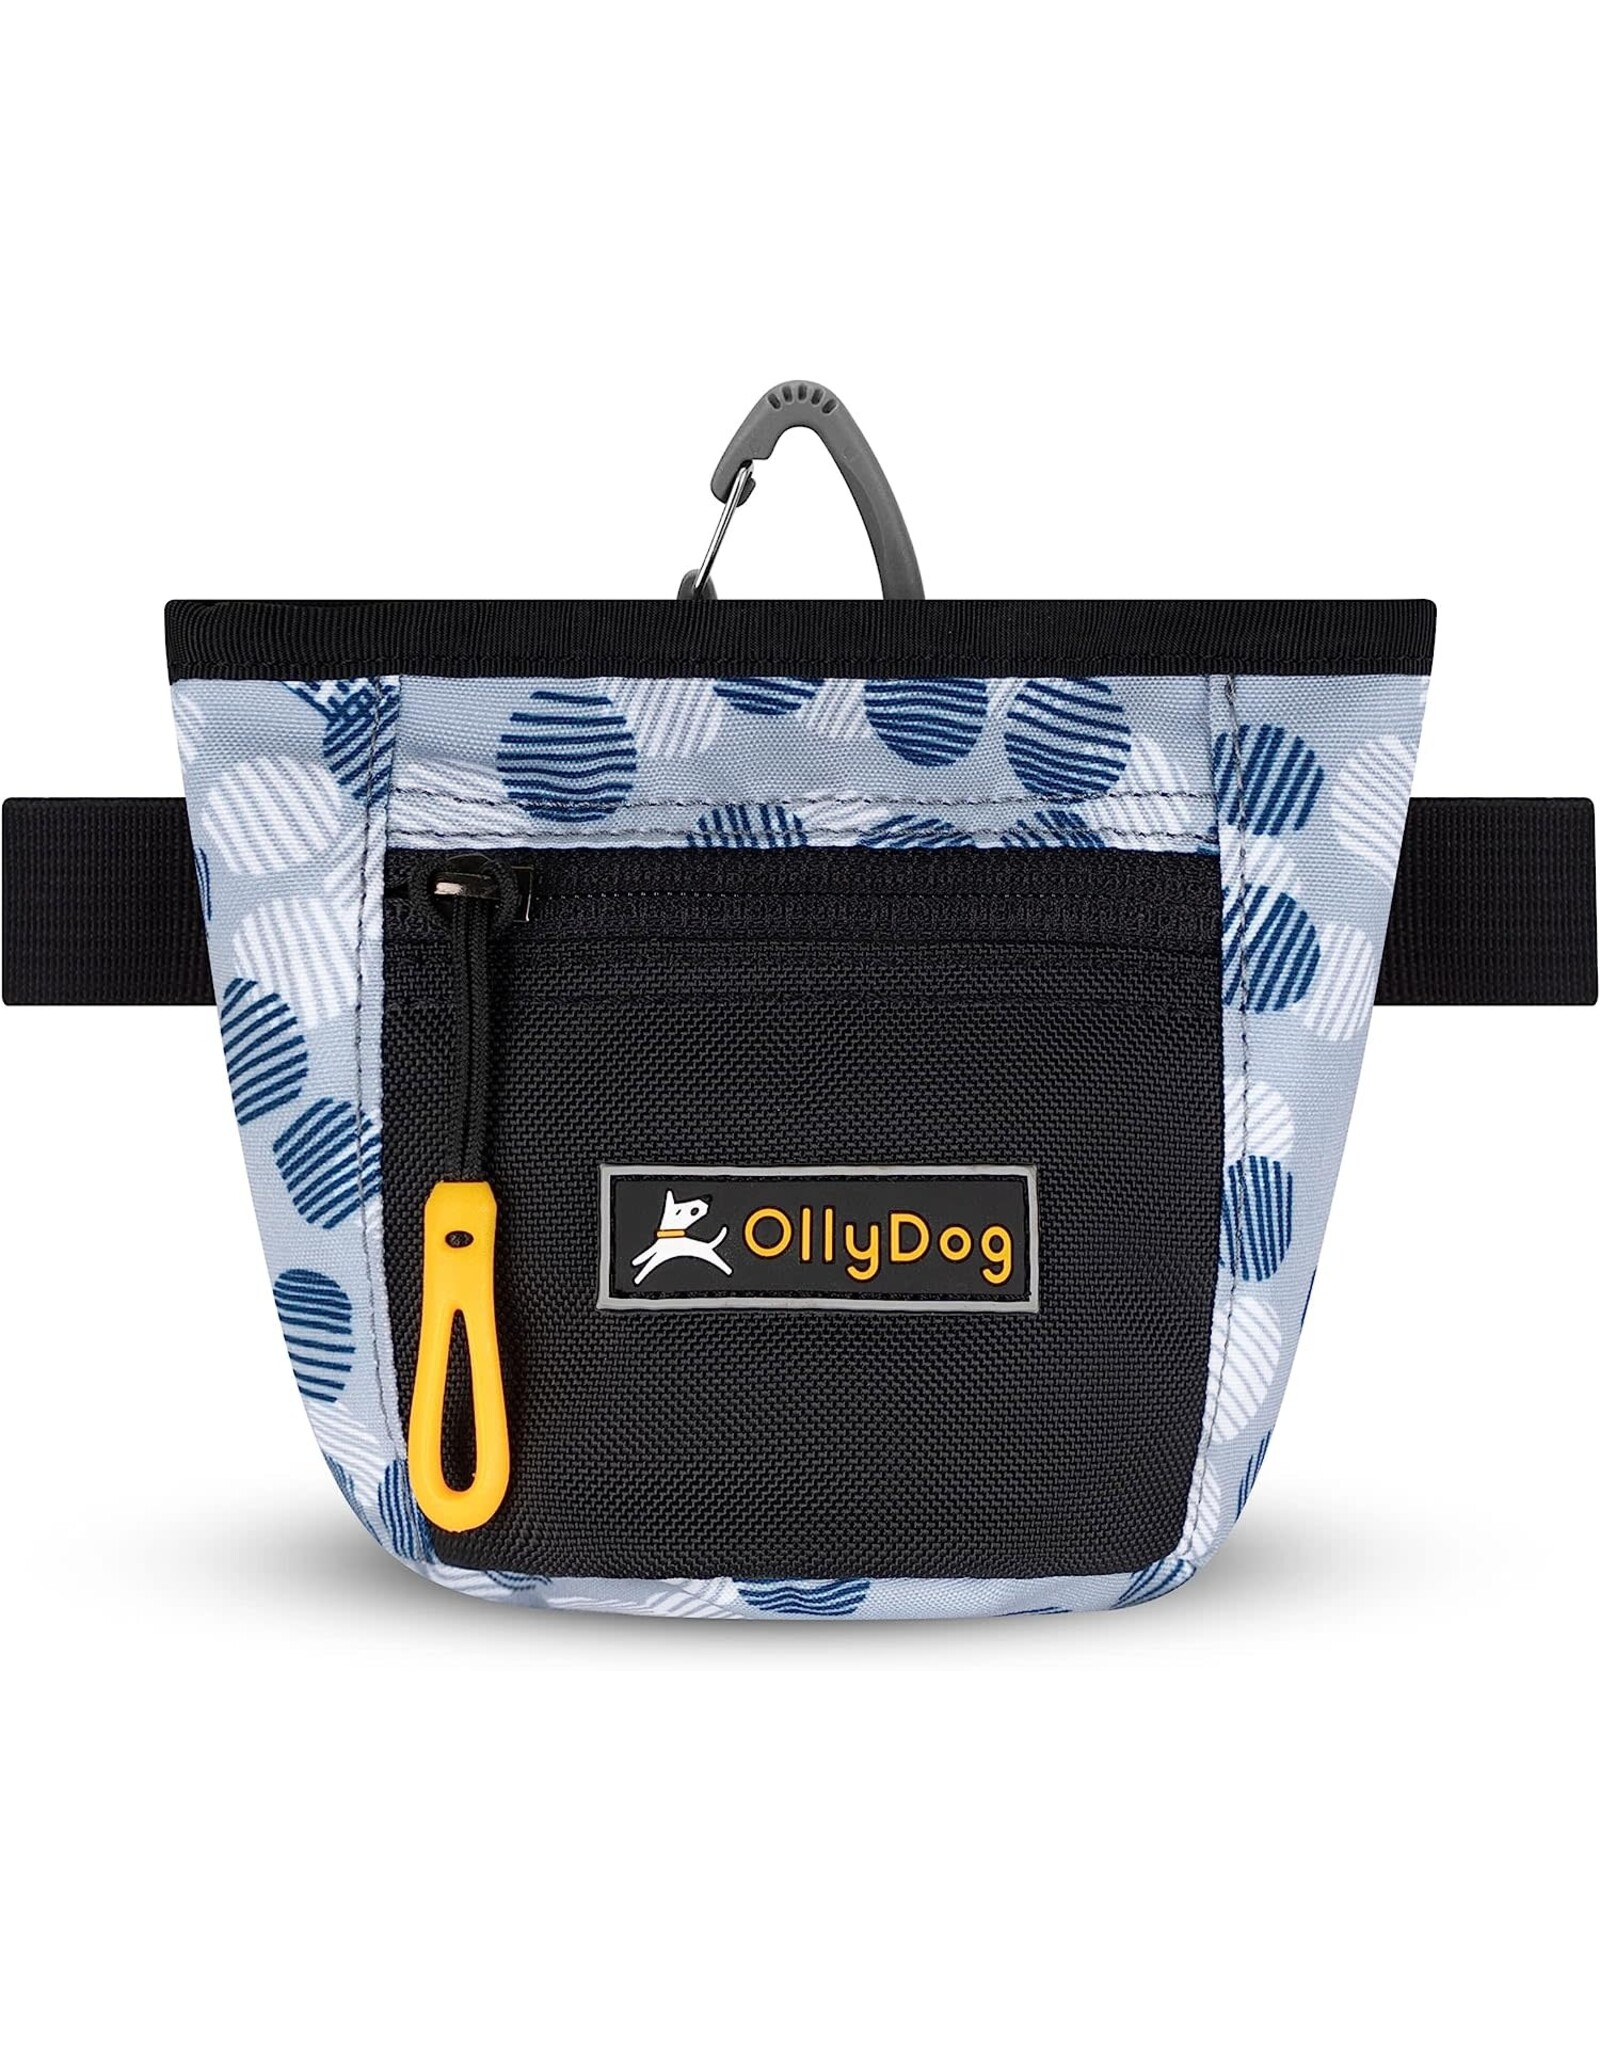 OllyDog Goodie Treat Bag: Moon Shadow, os